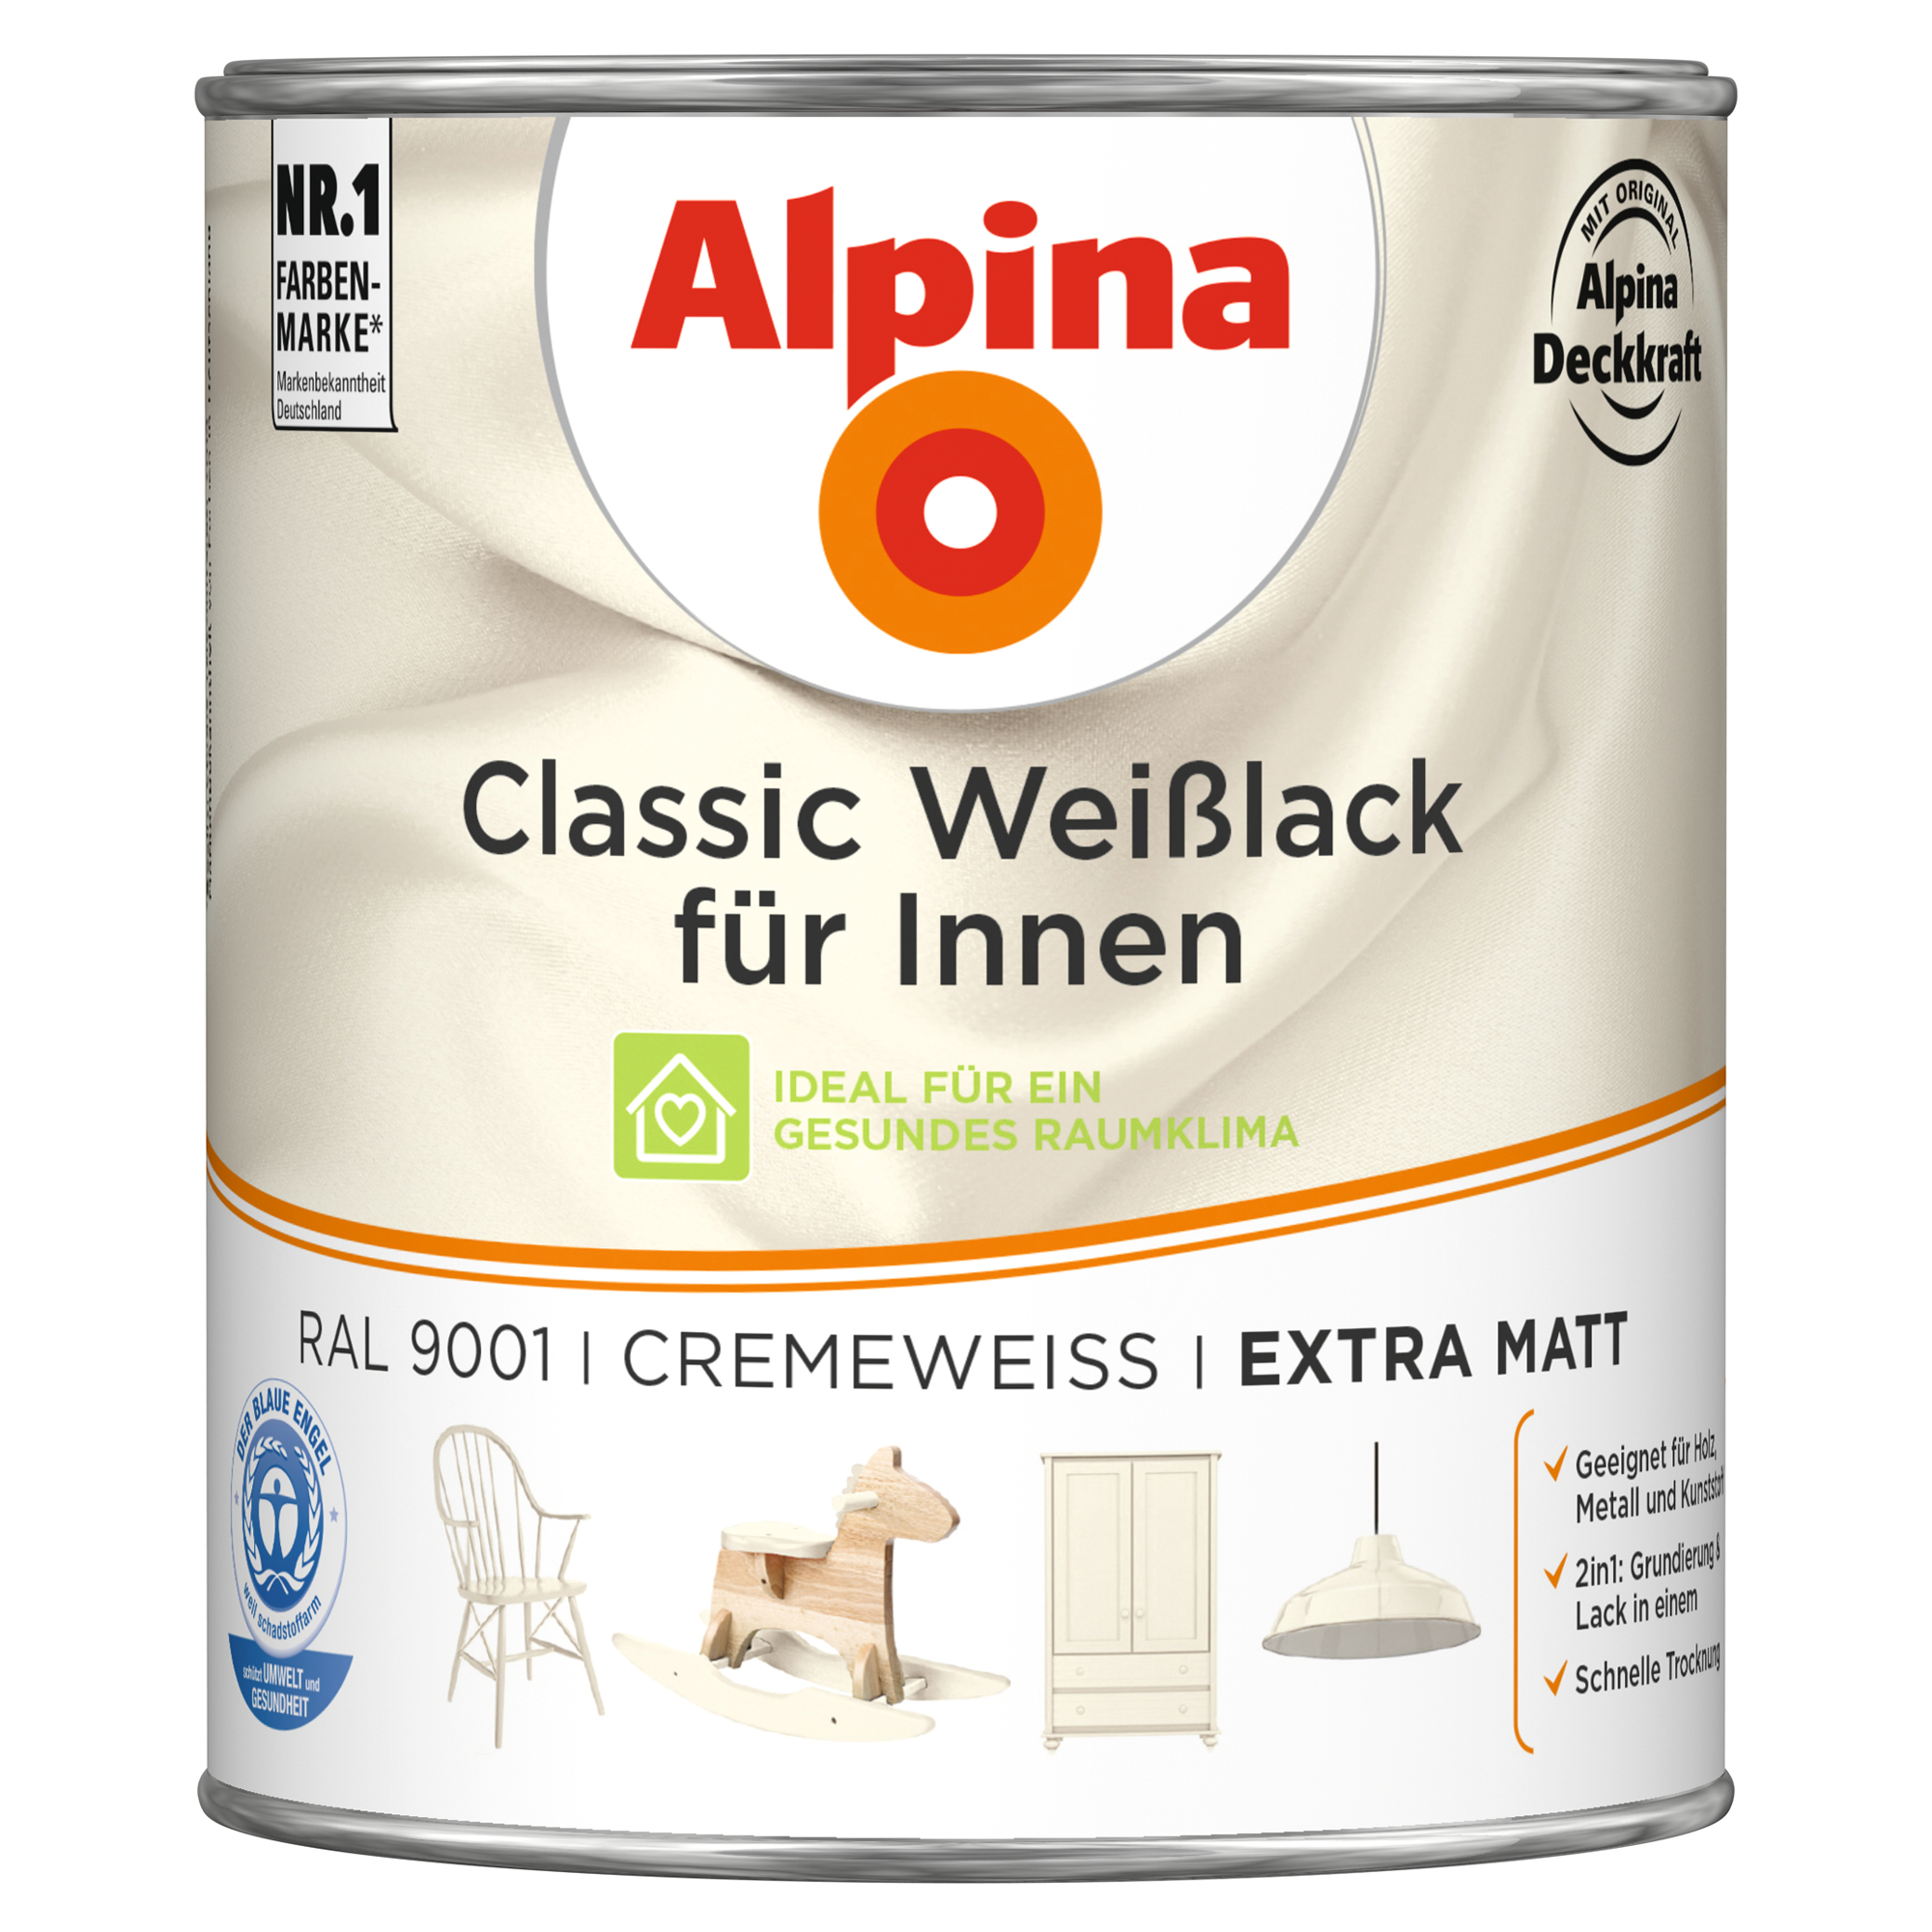 Weißlack für Innen cremeweiß extramatt 750 ml + product picture